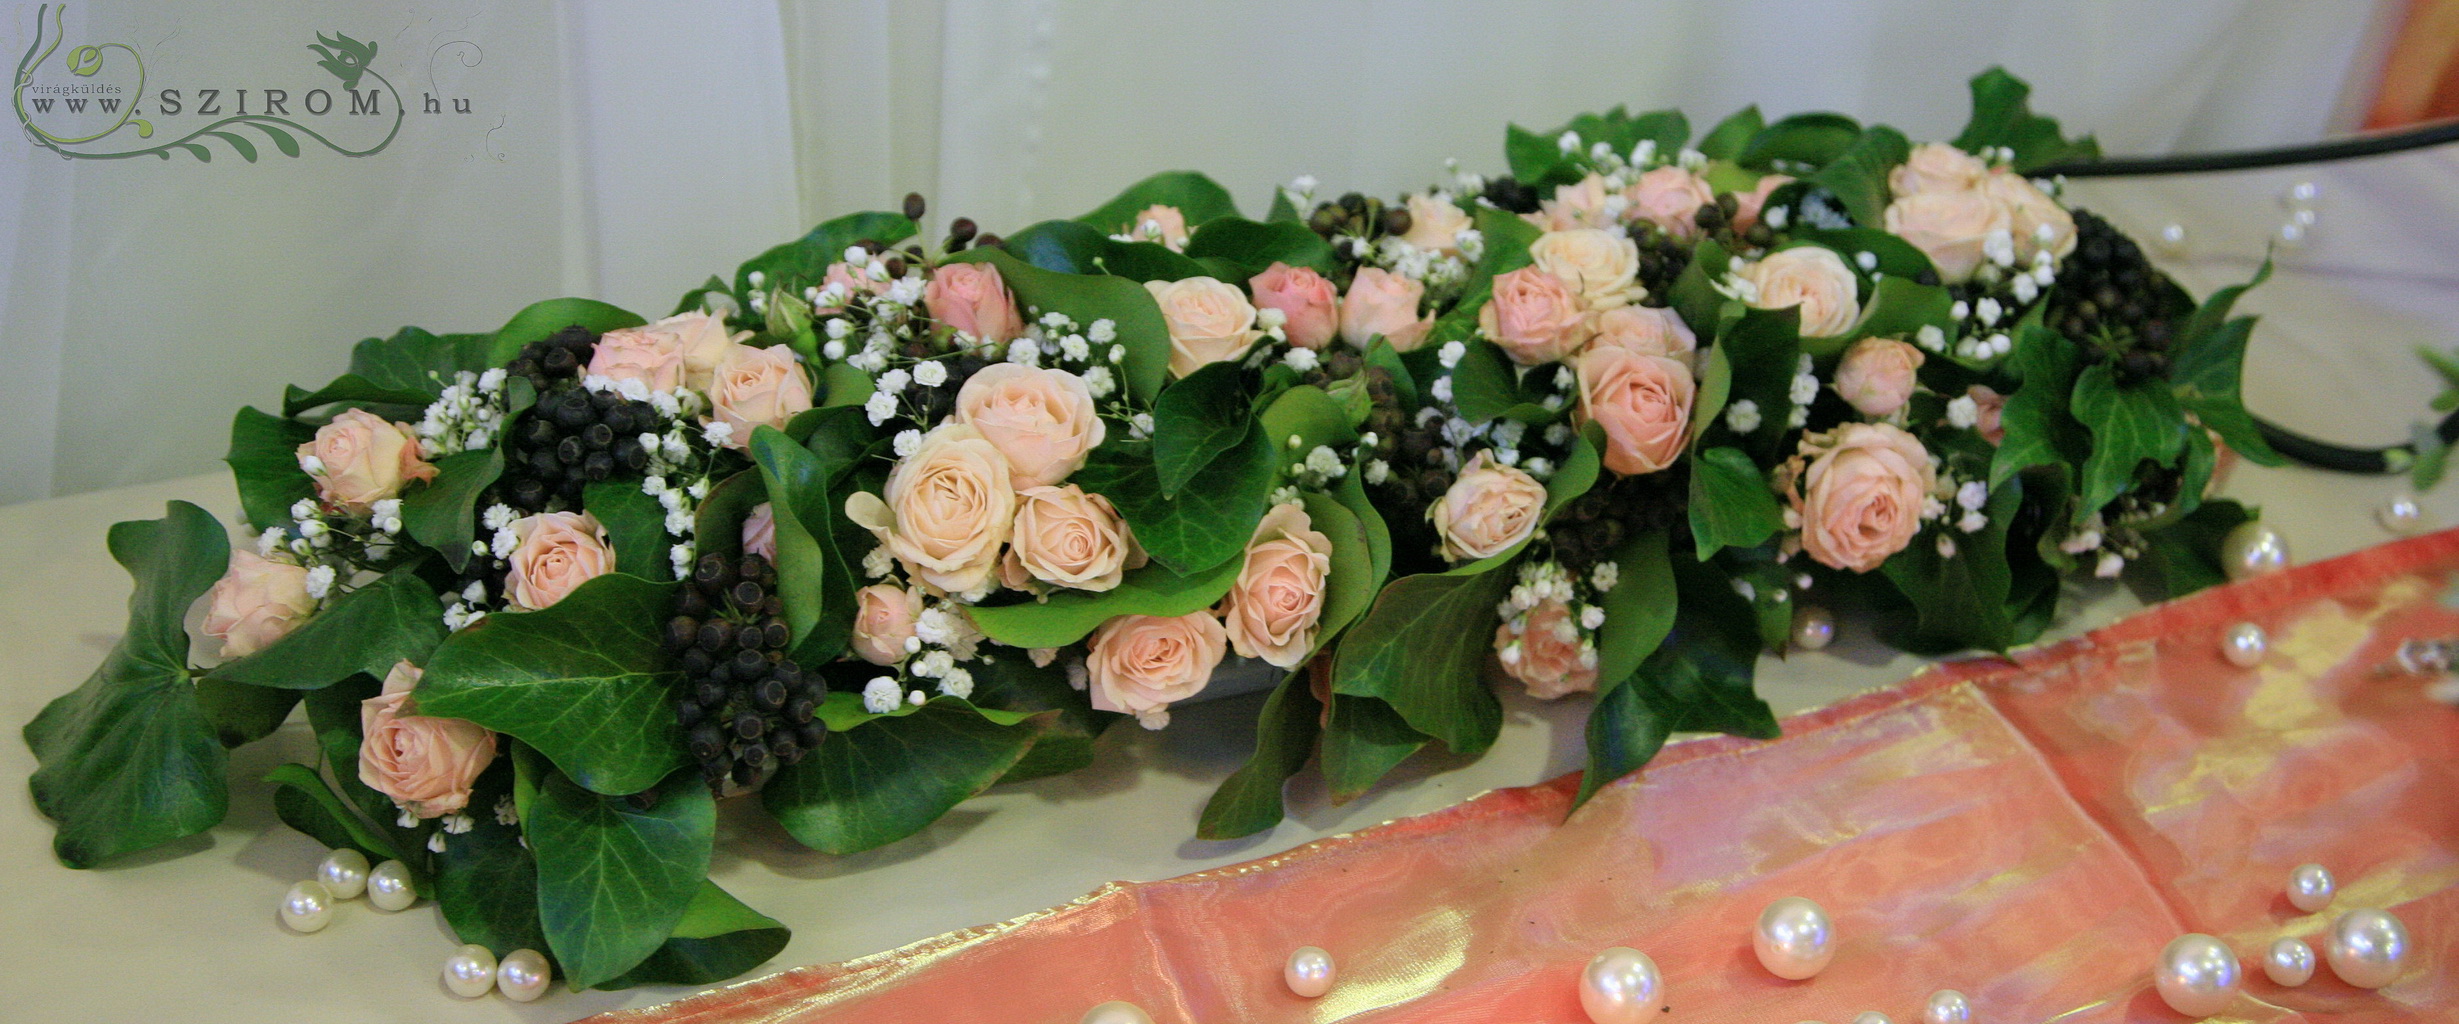 Főasztaldísz (bokros rózsa , barack), esküvő